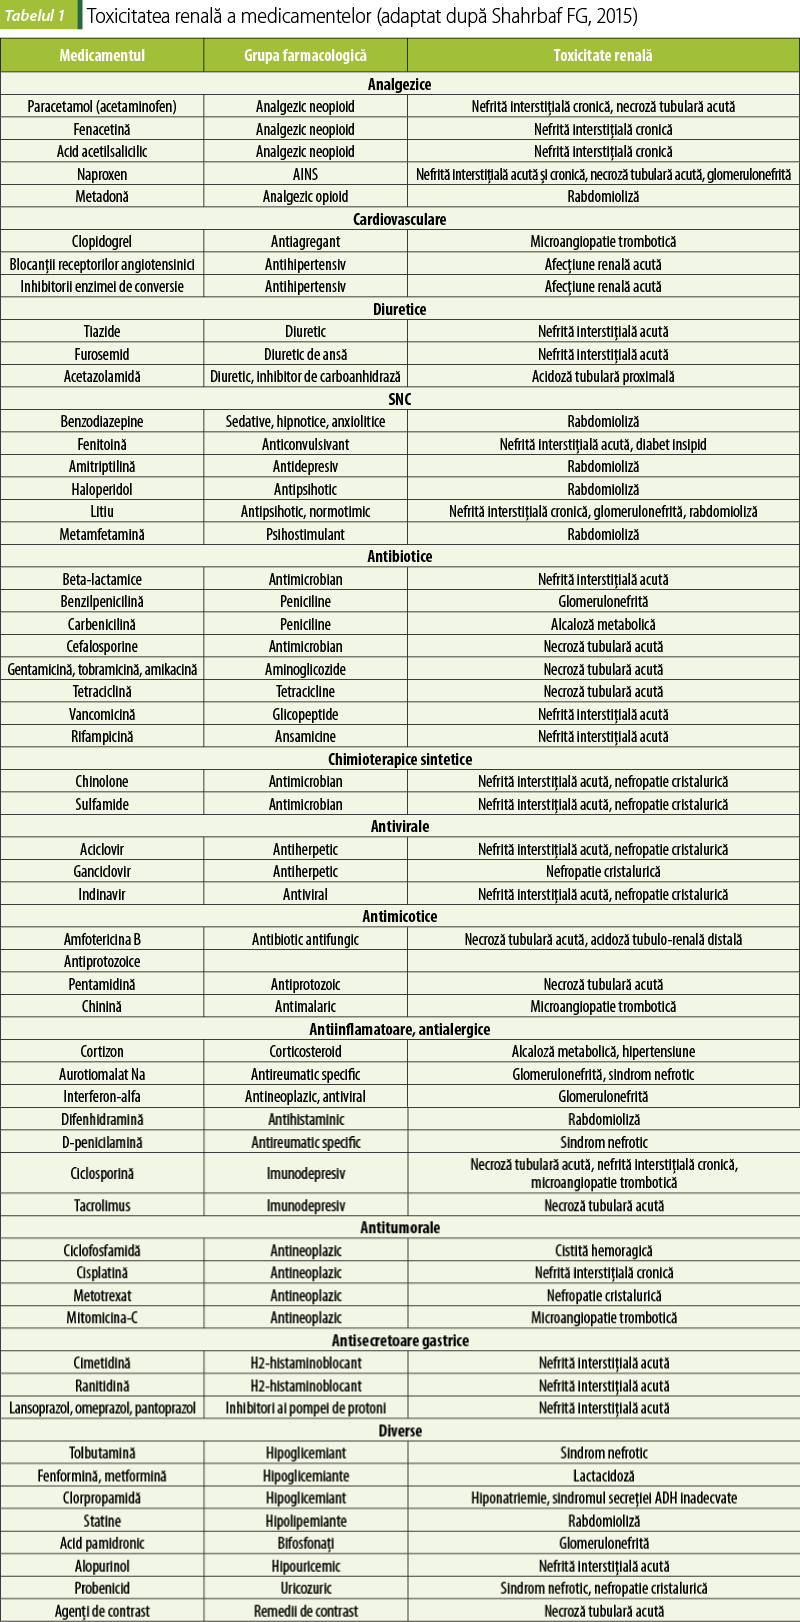 Tabel 1. Toxicitatea renală a medicamentelor (adaptat după Shahrbaf FG, 2015)